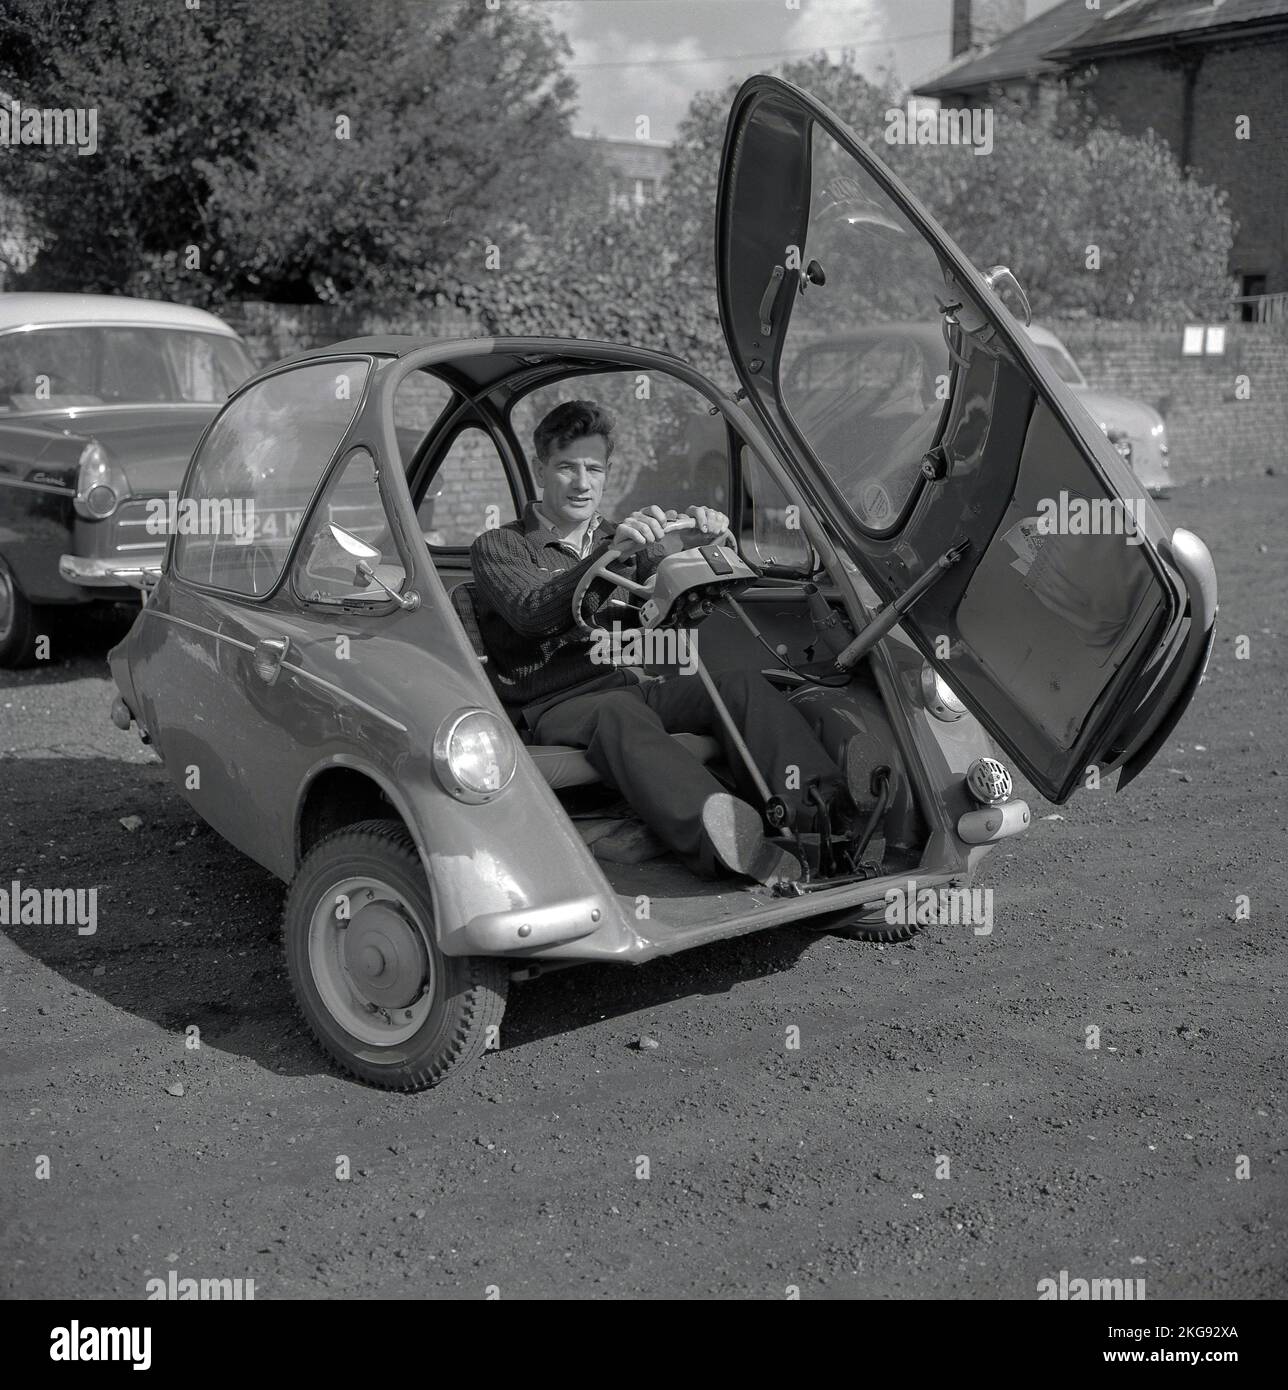 1960er, historisch, draußen auf einem Schotterparkplatz, ein Mann, der in einem kleinen Auto der Epoche sitzt, einem Seifenwagen, einem BMW Isetta, der eine Vordertür hatte, Wycombe, England, Großbritannien. Dieses winzige Auto wurde 1953 von ISO Spa in Italien gebaut und in verschiedenen Ländern unter Lizenz gebaut, unter anderem bis 1962 von BMW in Deutschland und bekannt als „Bubble Car“. Stockfoto